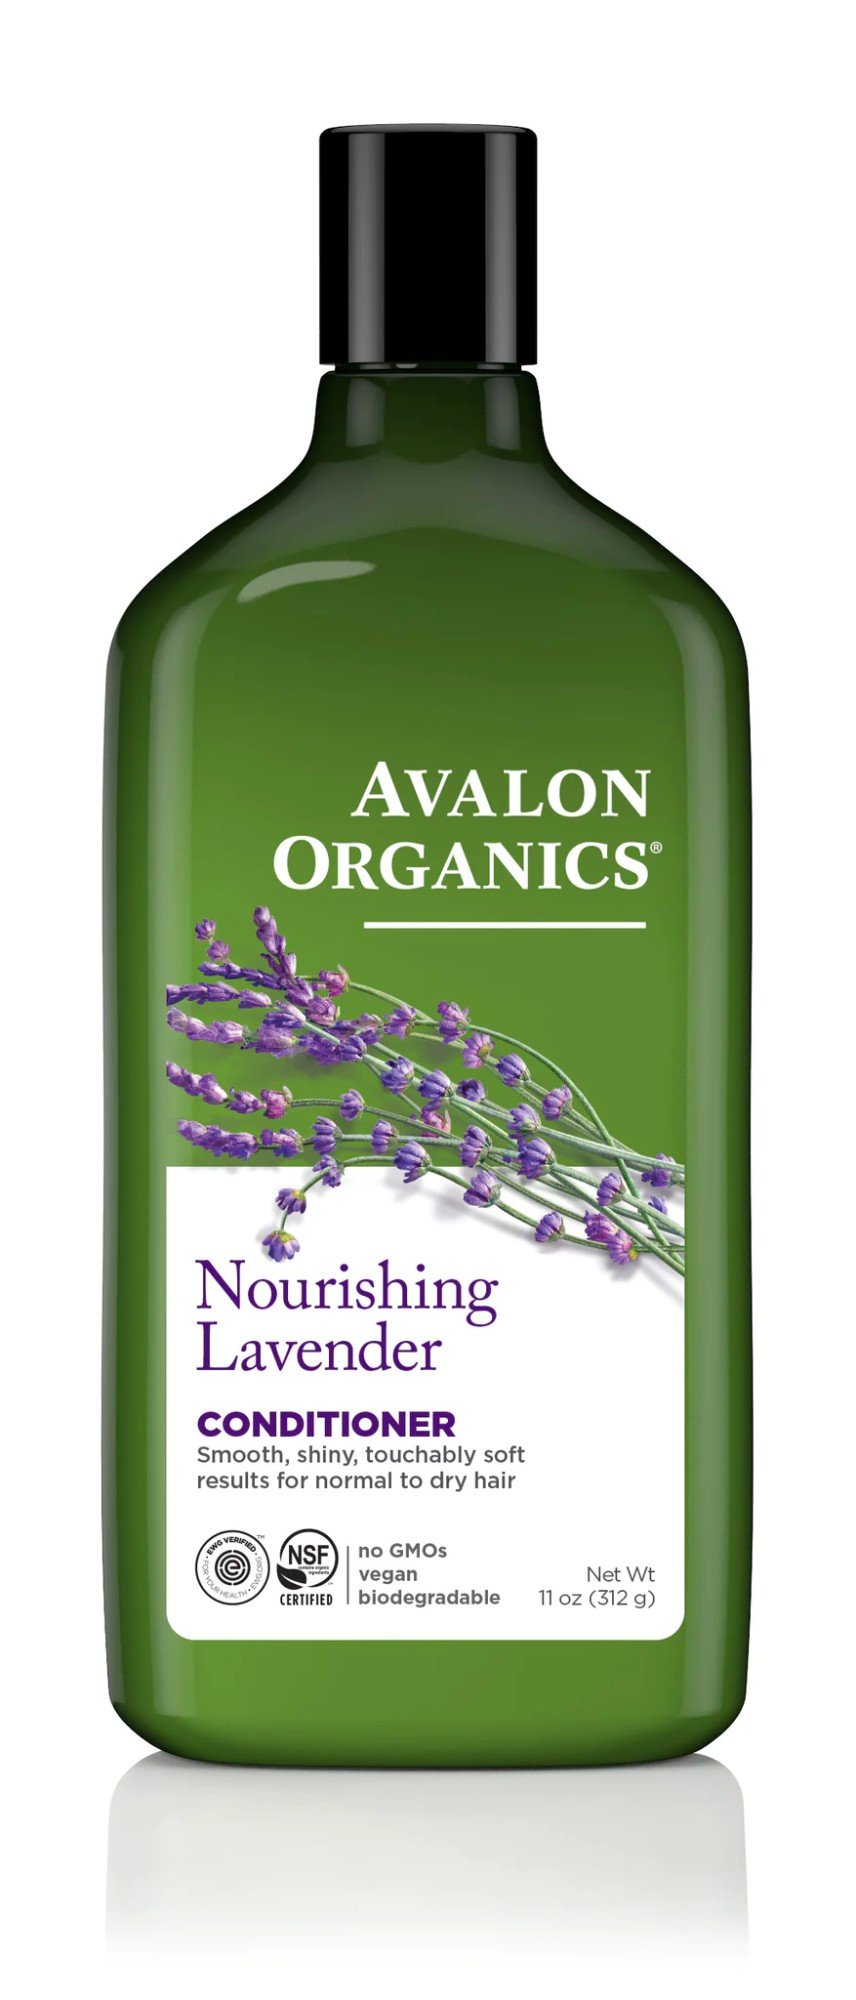 Avalon Organics Nourishing Lavender Conditioner 11 oz Liquid